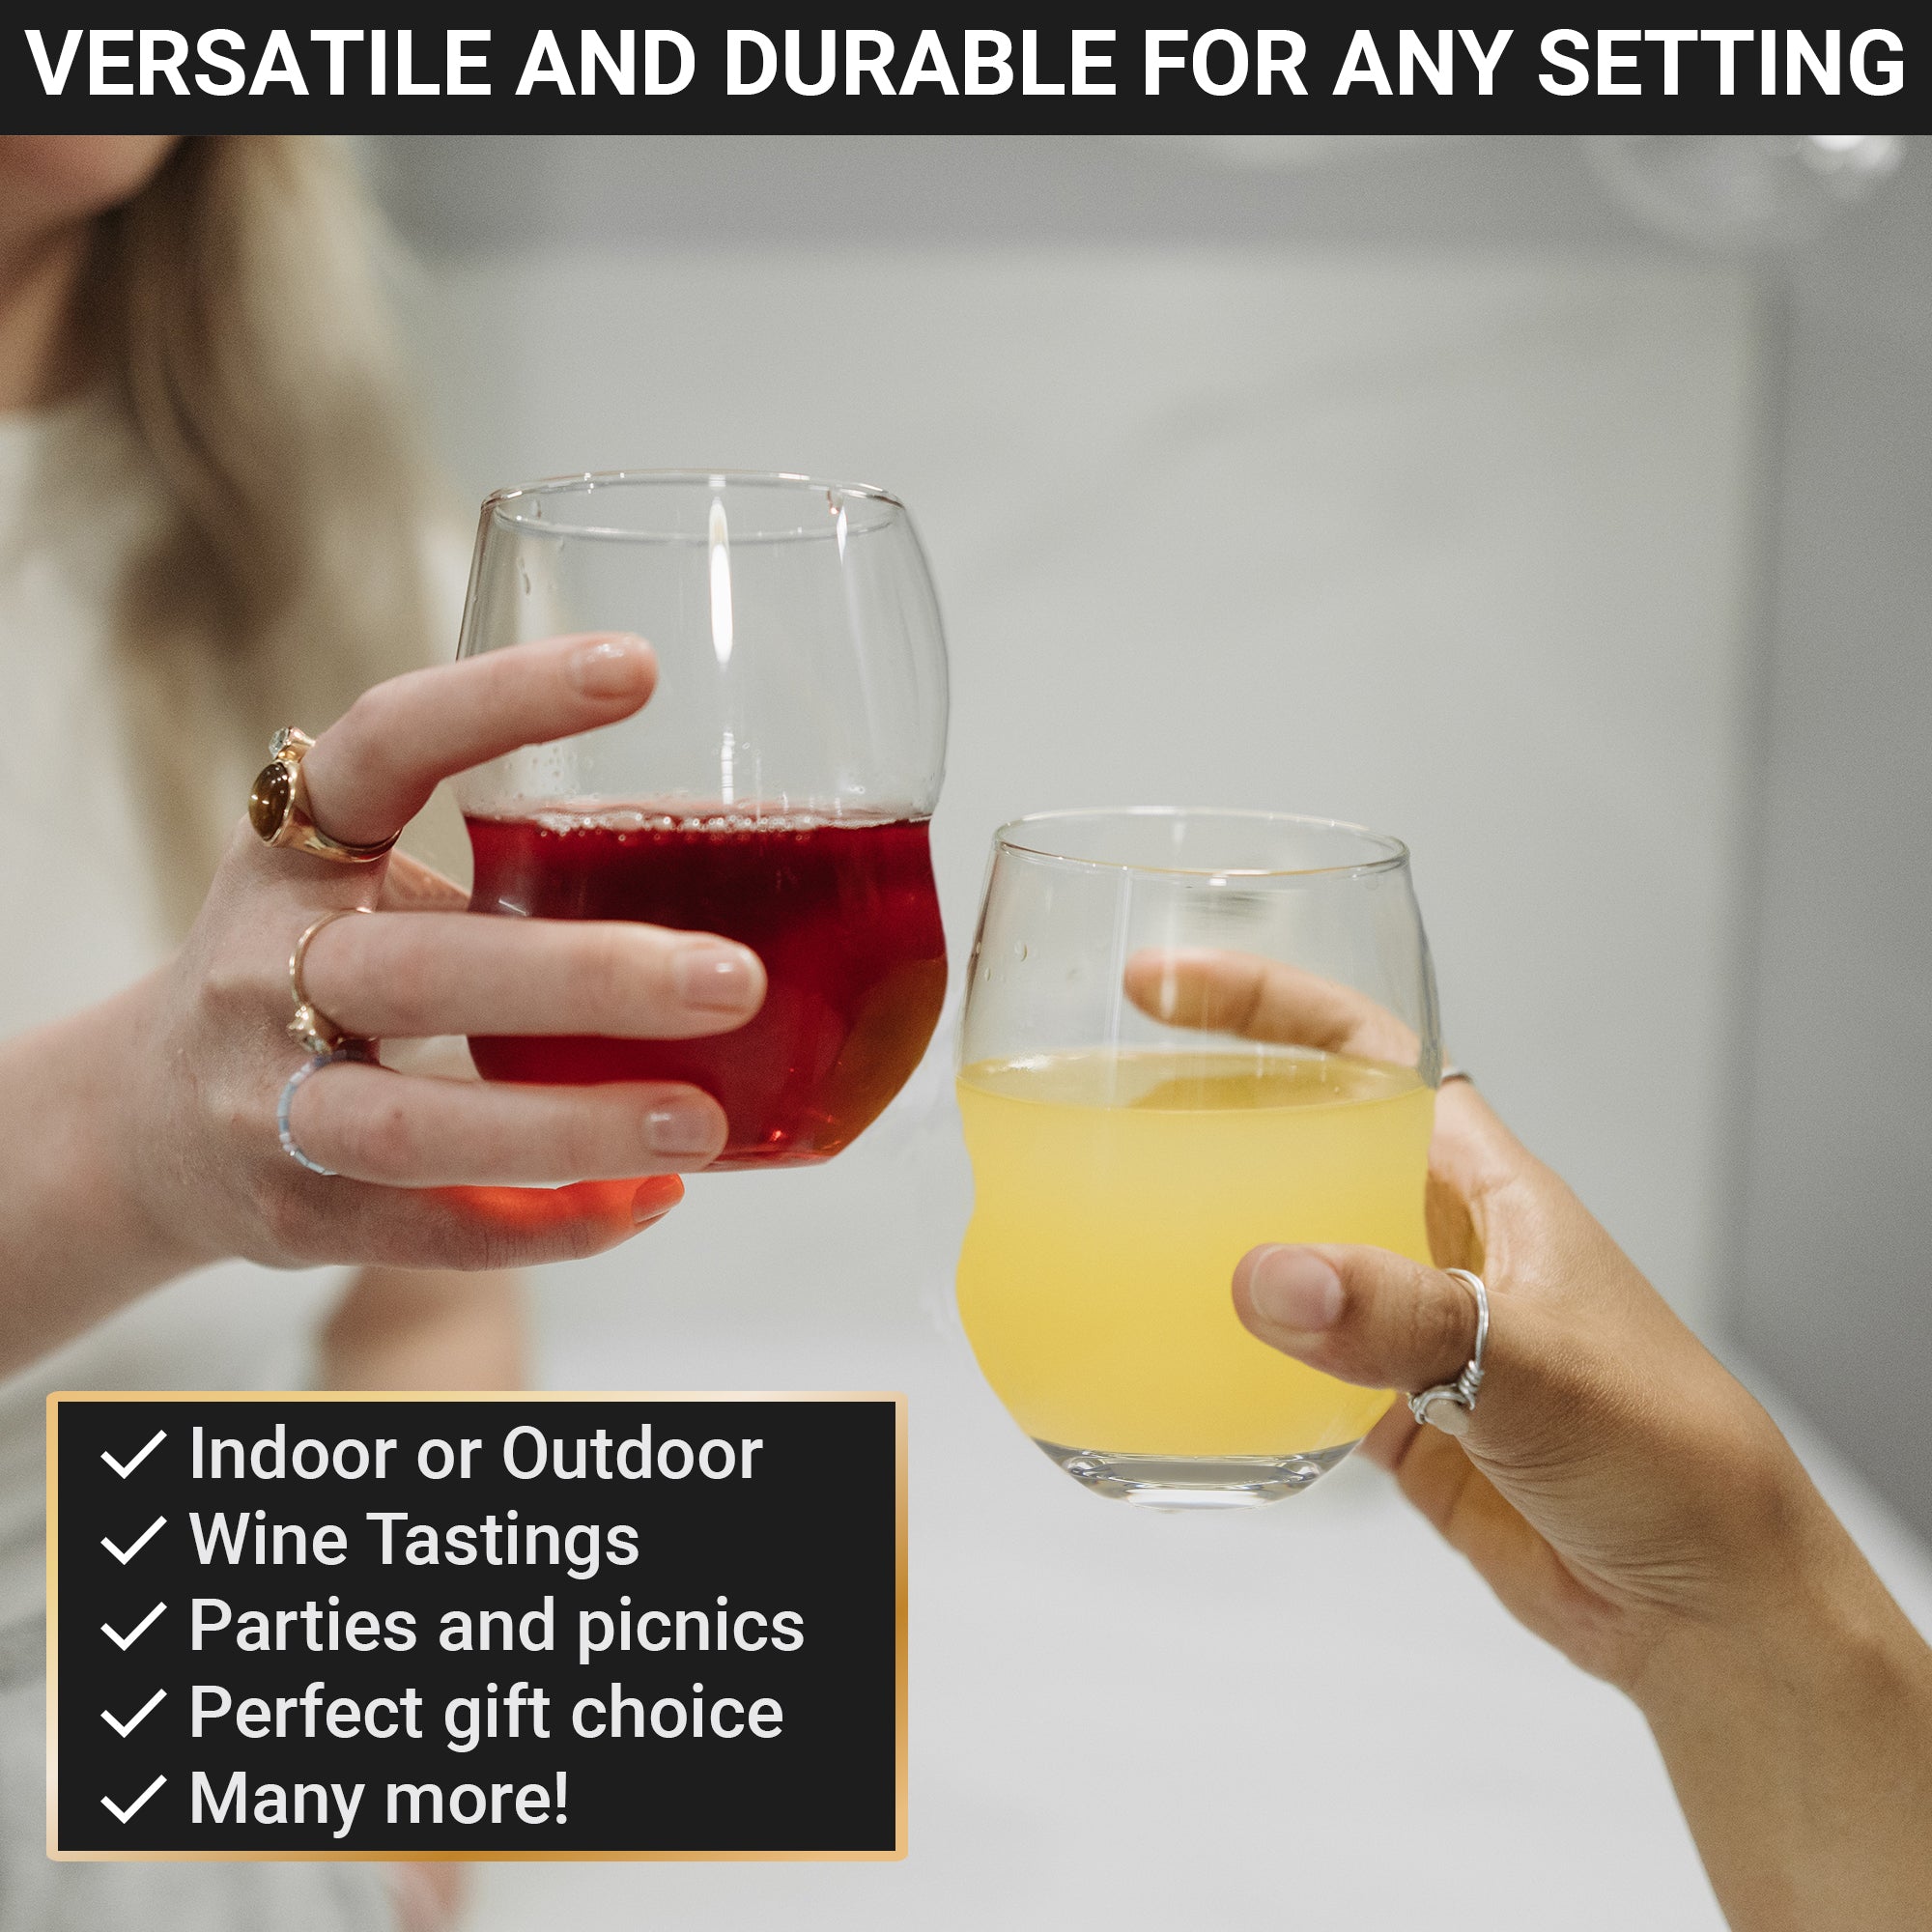 Unbreakable Wine Glasses - 100% Tritan - Shatterproof, Reusable, Dishwasher Safe (Set of 4)